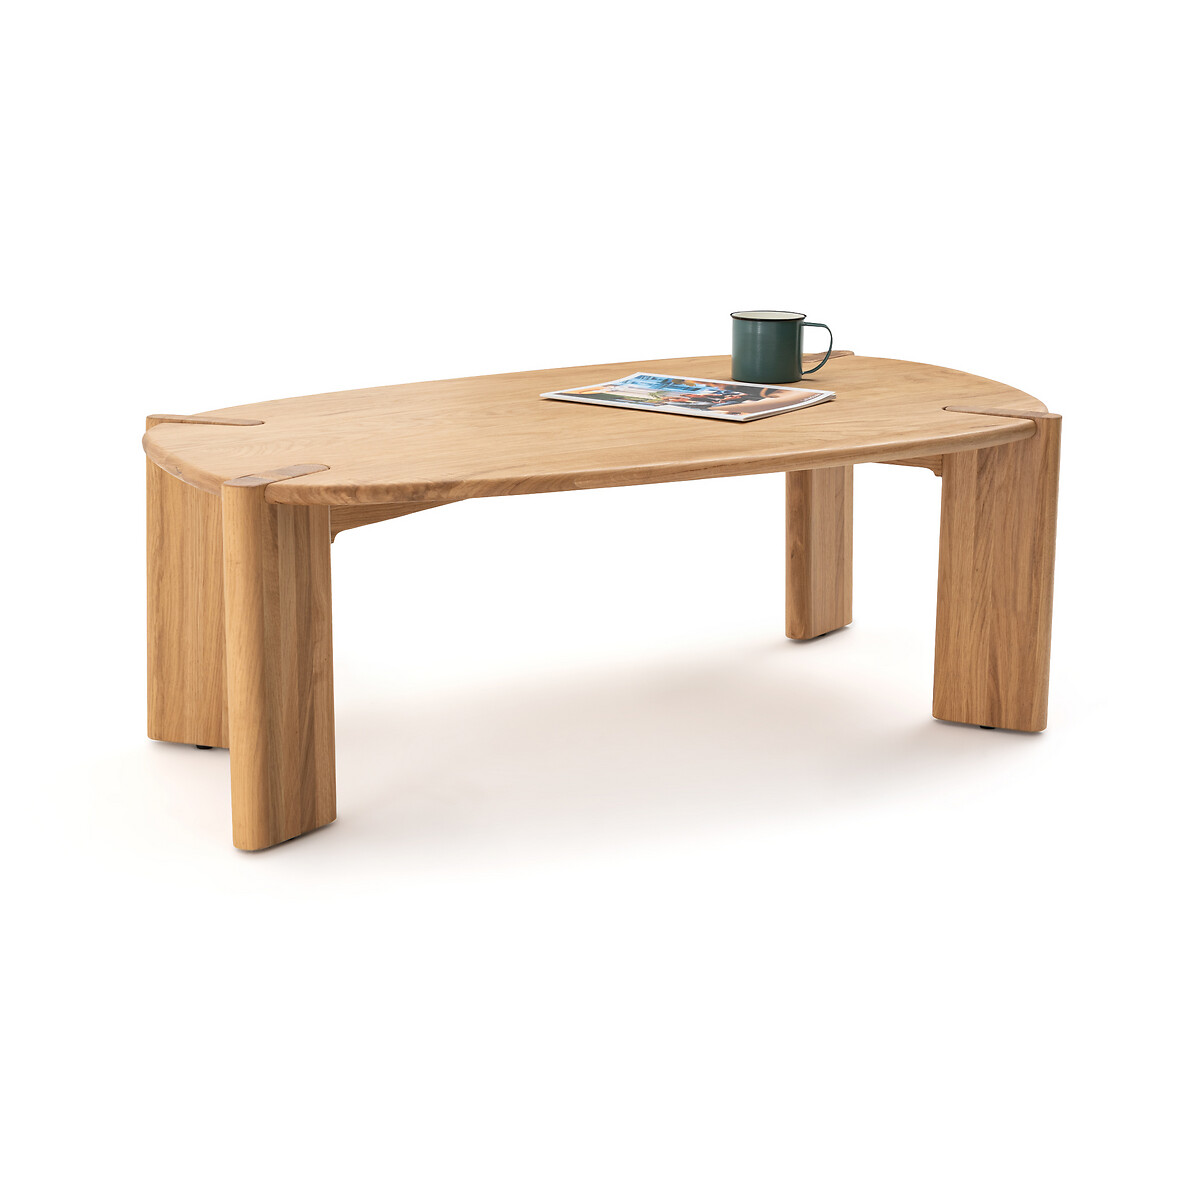 Elmo Solid Oak Coffee Table by La Redoute